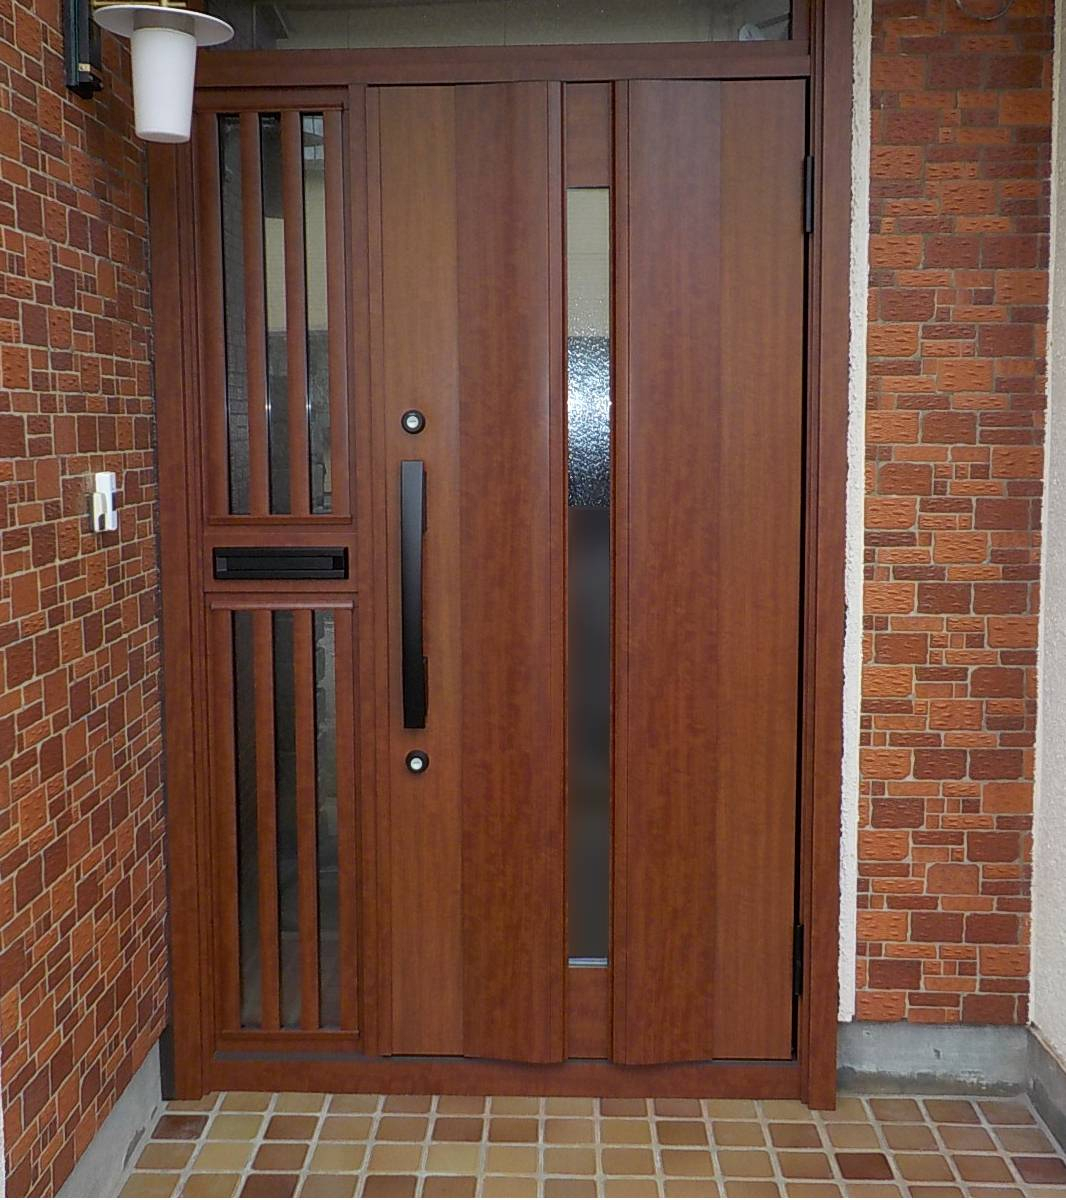 広井トーヨー住器の玄関ドア交換工事の施工後の写真1